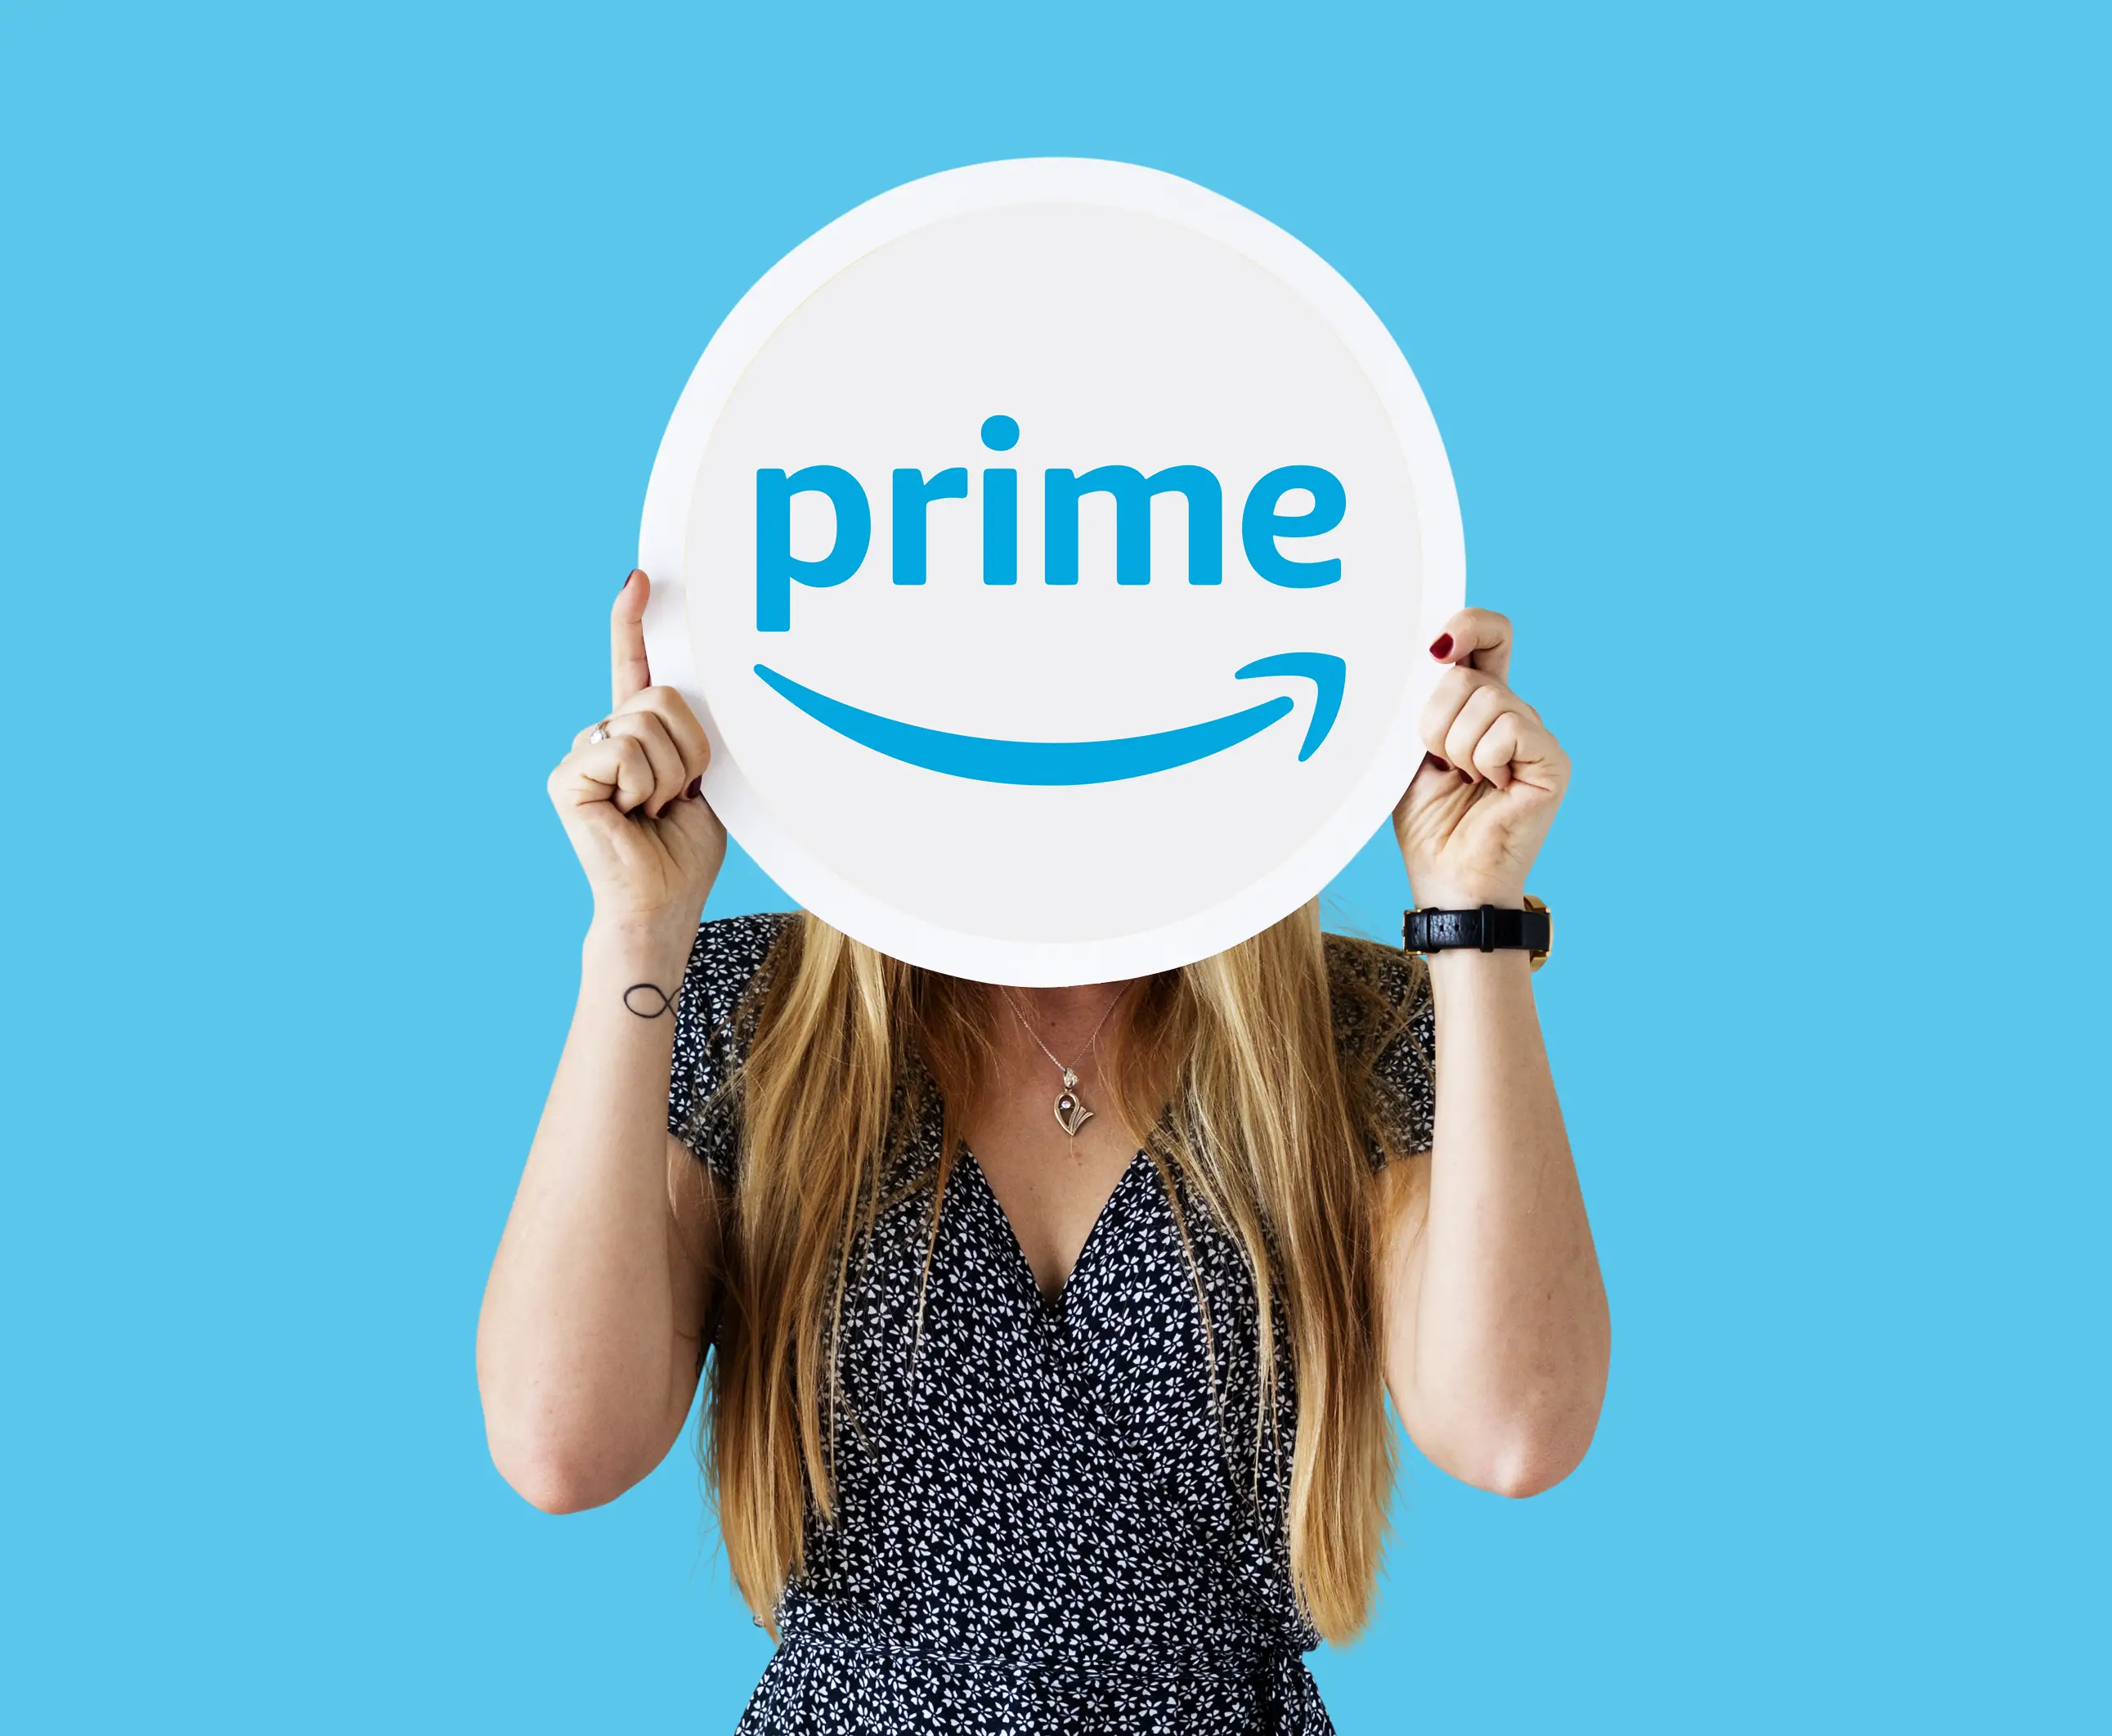 prime on Amazon saves you money